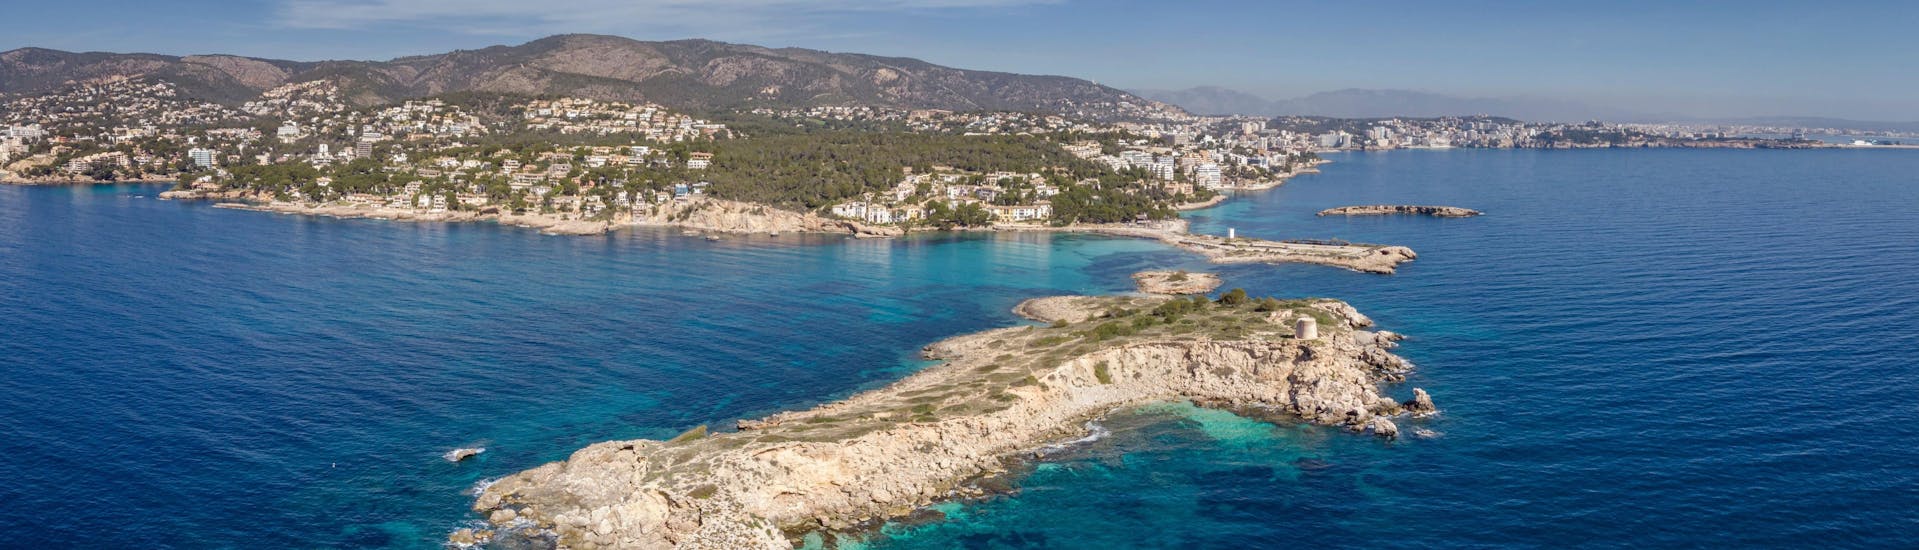 Blick auf den Strand von Illetes, Calvià, Mallorca, ein beliebtes Ziel für Bootsfahrten. 